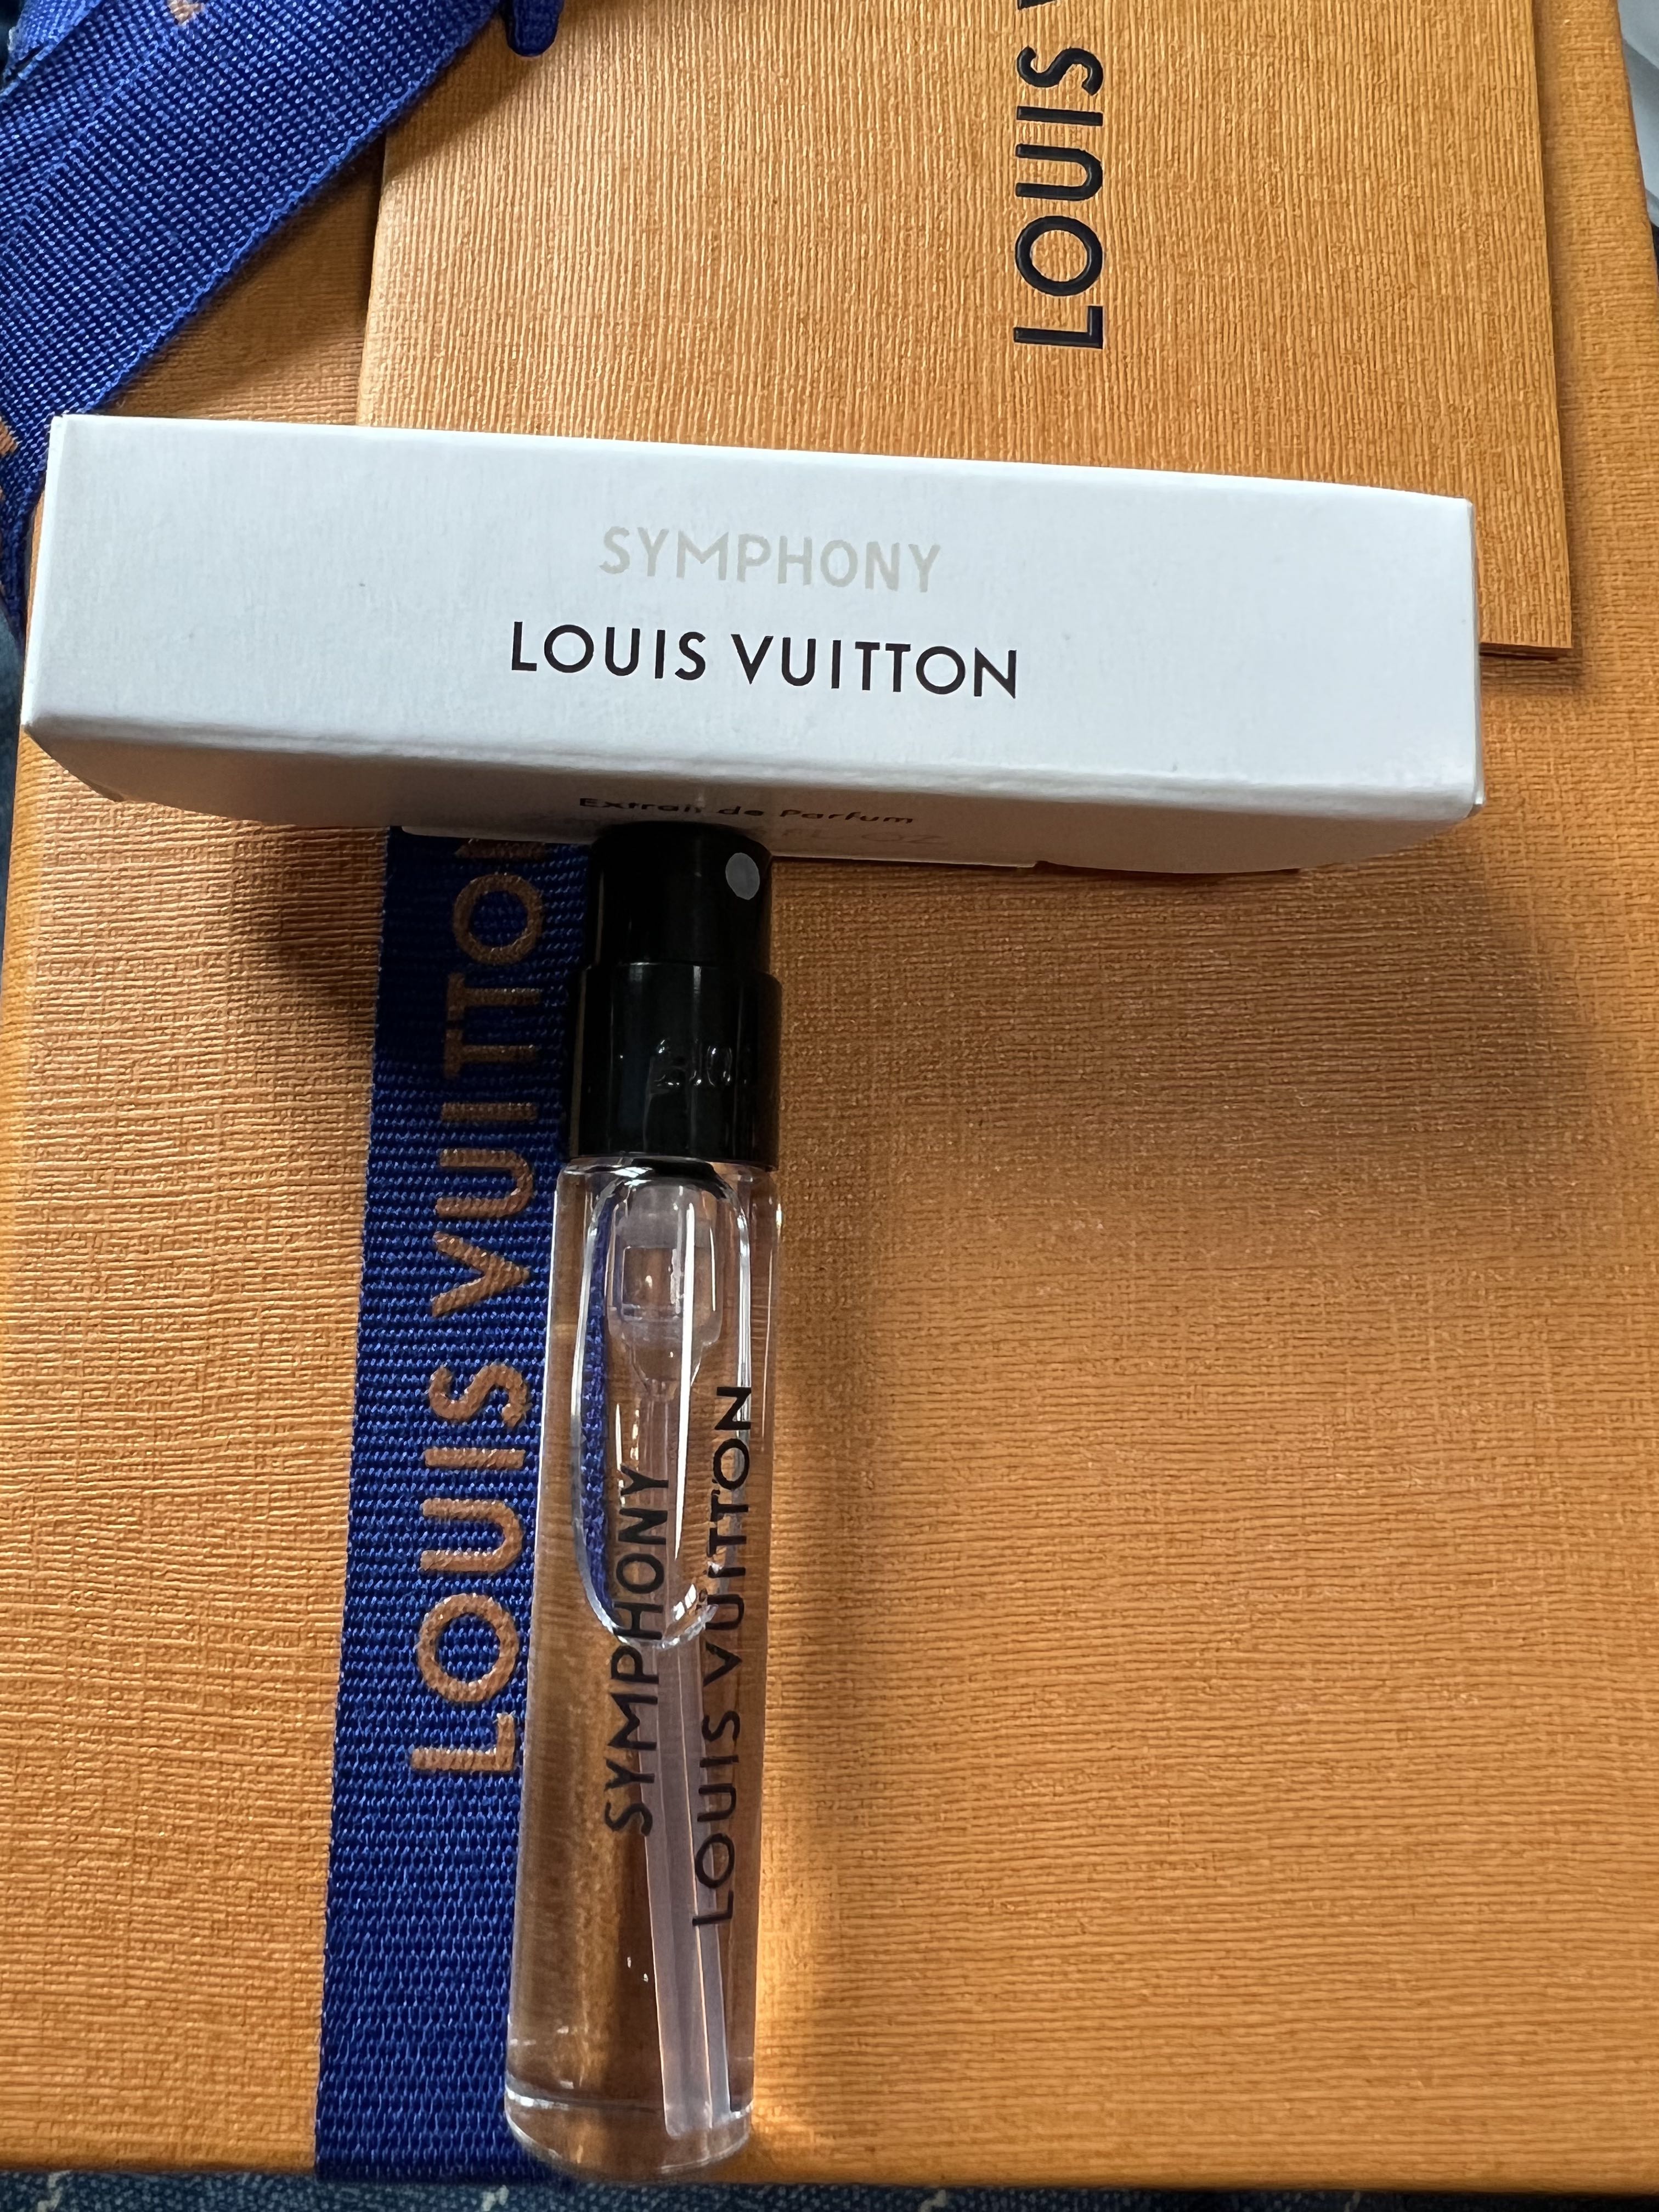 LOUIS VUITTON Symphony Extrait de Parfum | 100ML Spray | NEW SEALED BOX